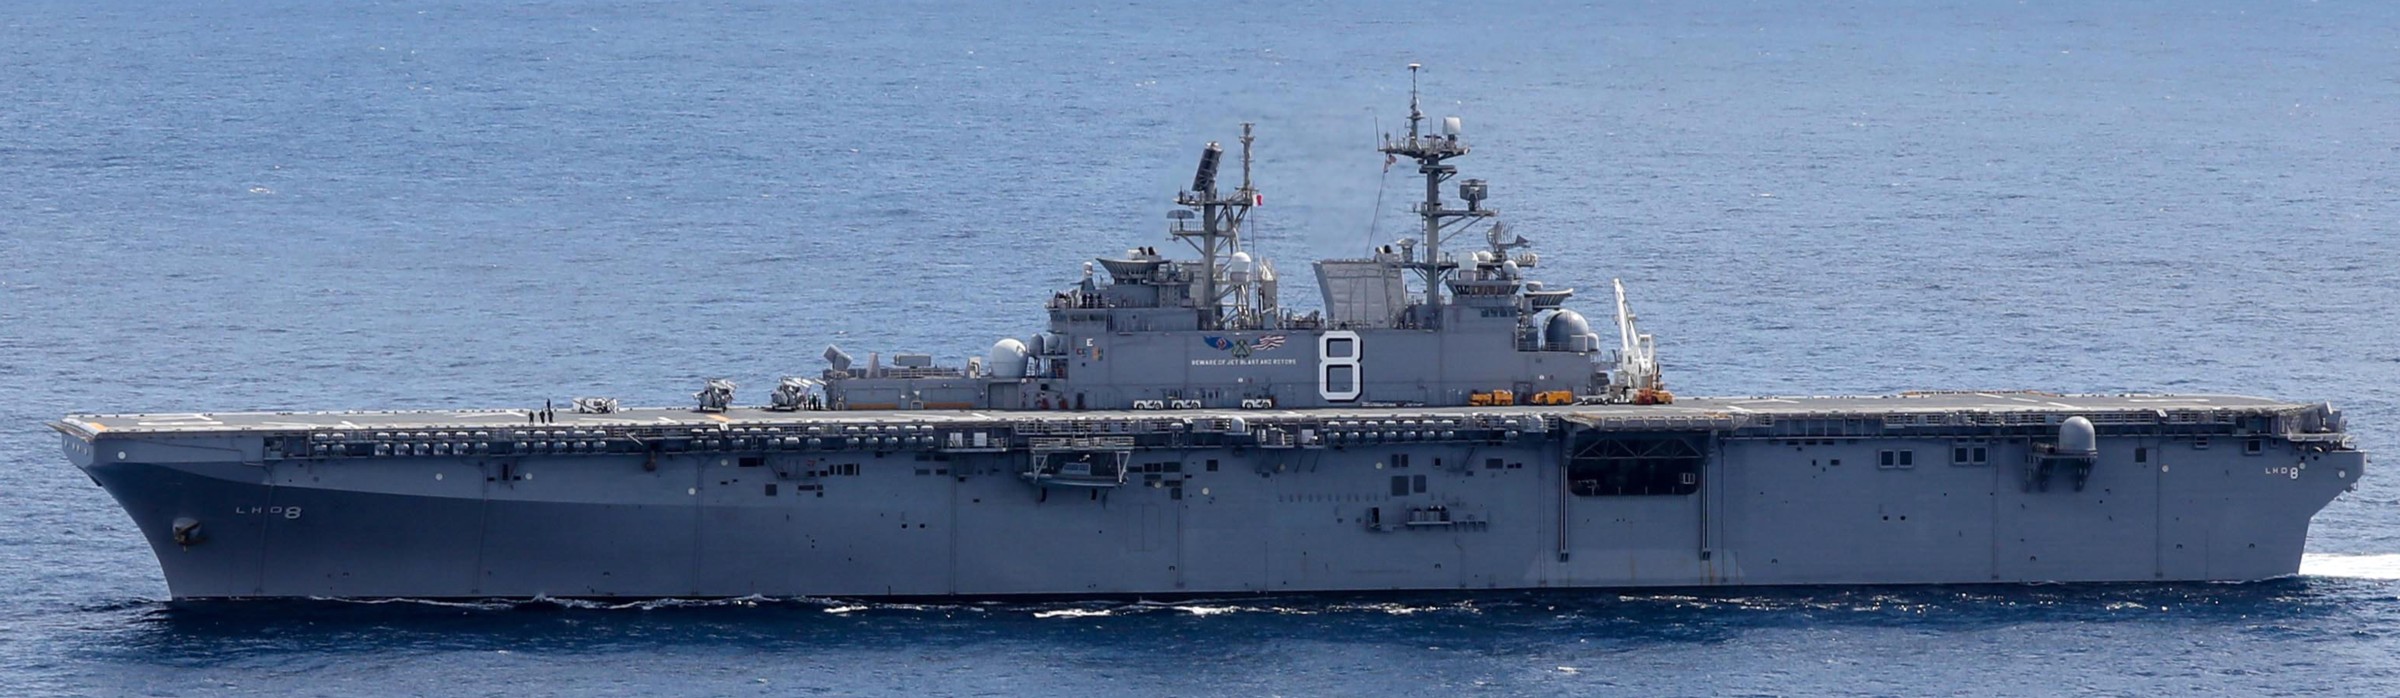 lhd-8 uss makin island amphibious assault ship landing helicopter dock us navy 115